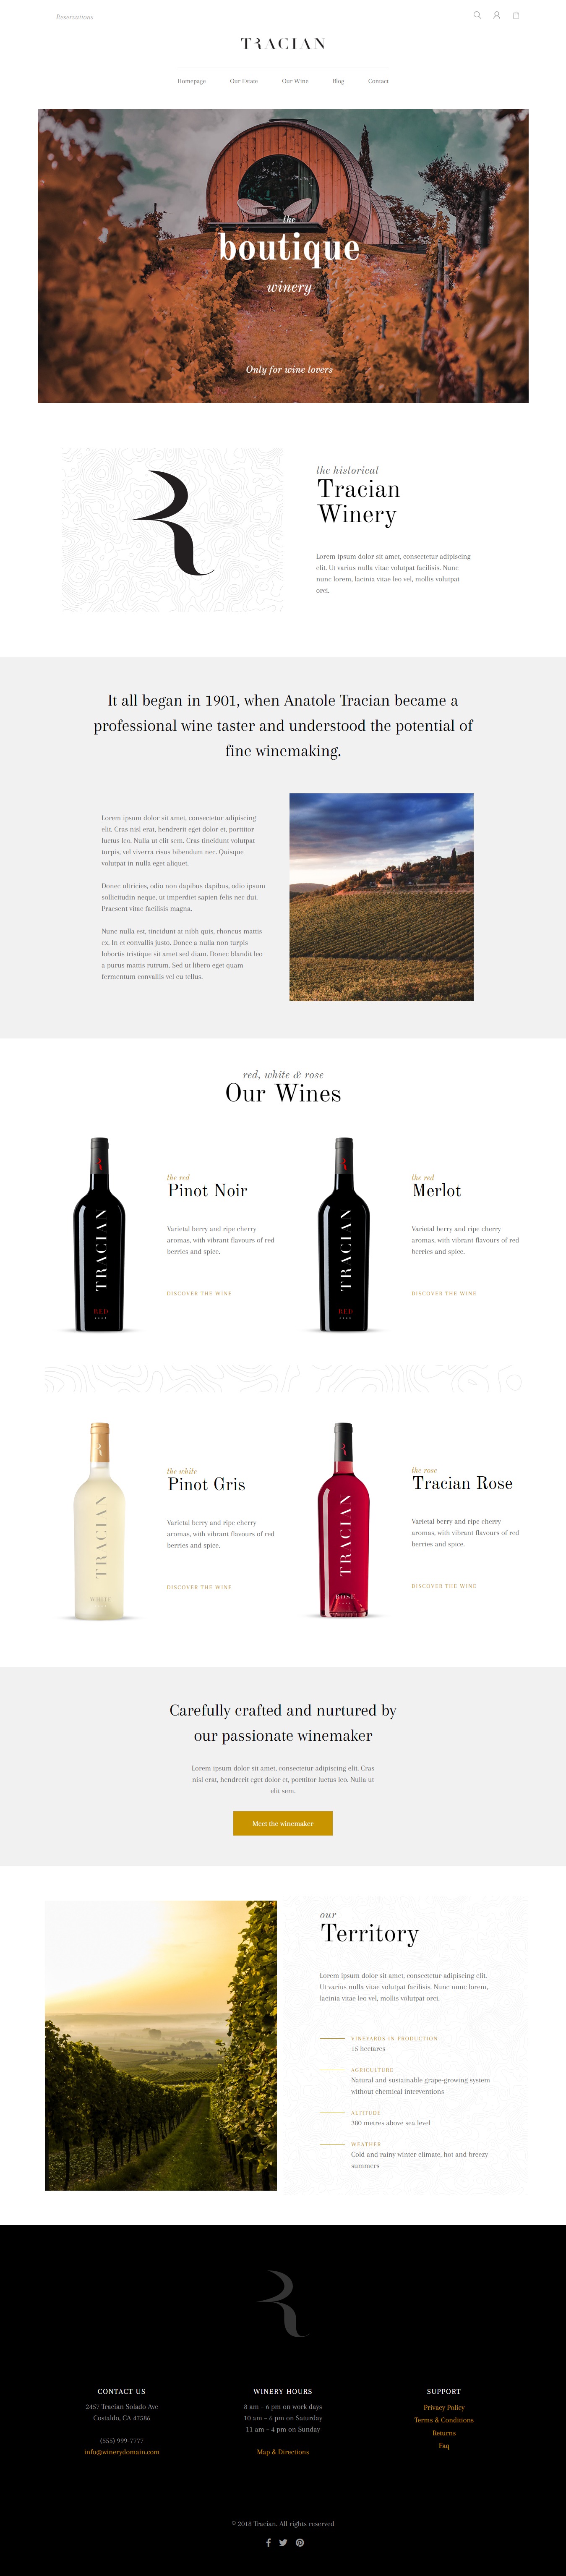 Tracian - Wine WordPress Theme by disgogo | ThemeForest